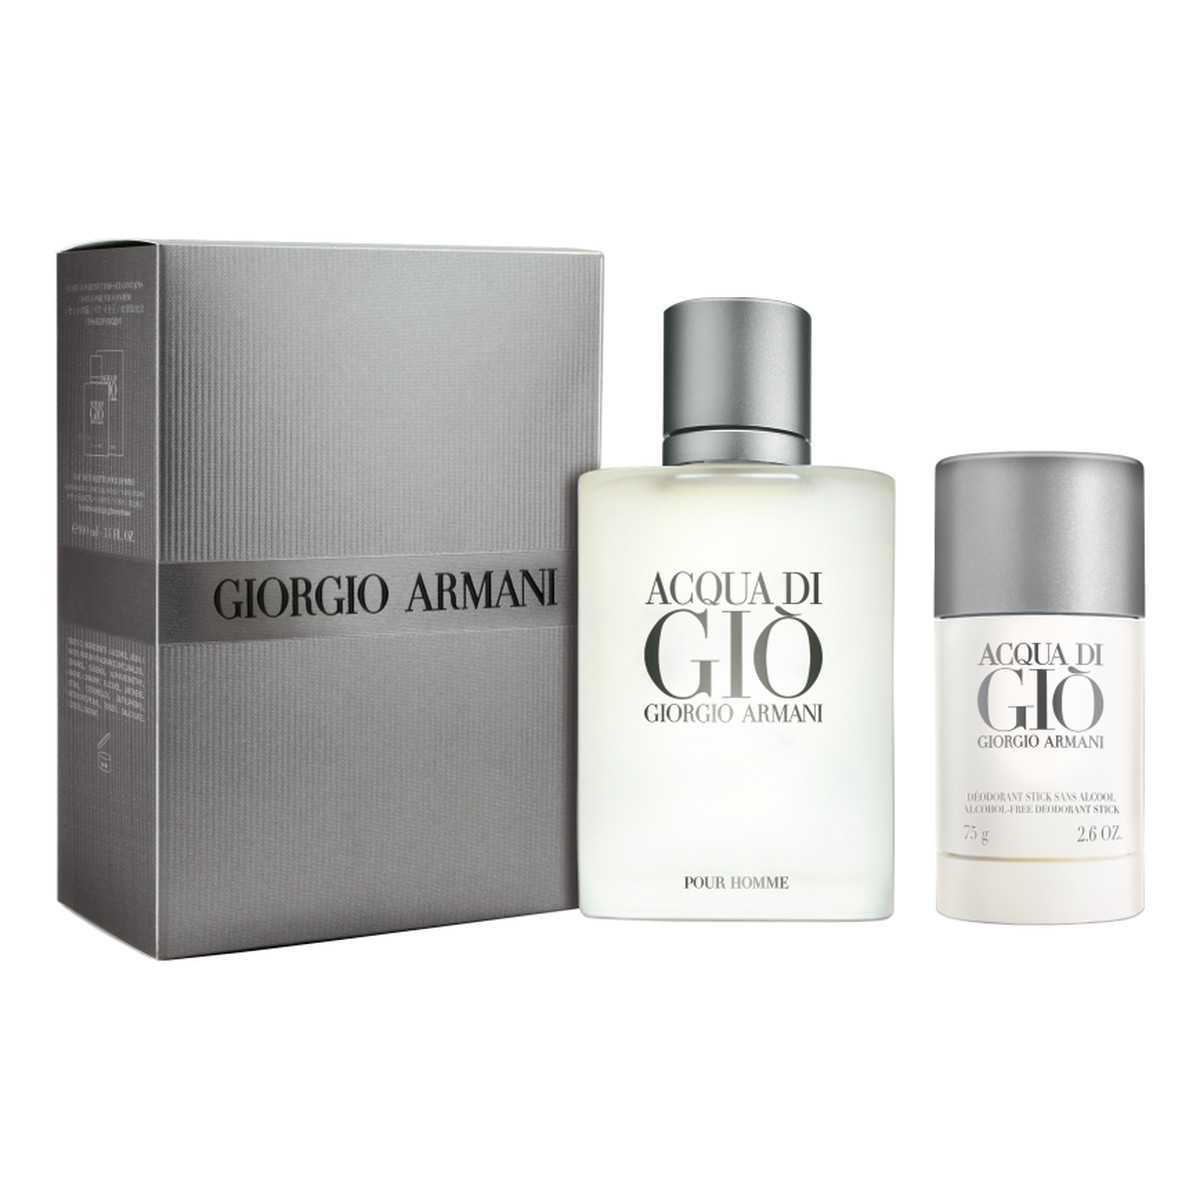 Giorgio Armani Acqua di Gio Pour Homme Woda toaletowa spray 100ml + dezodorant sztyft